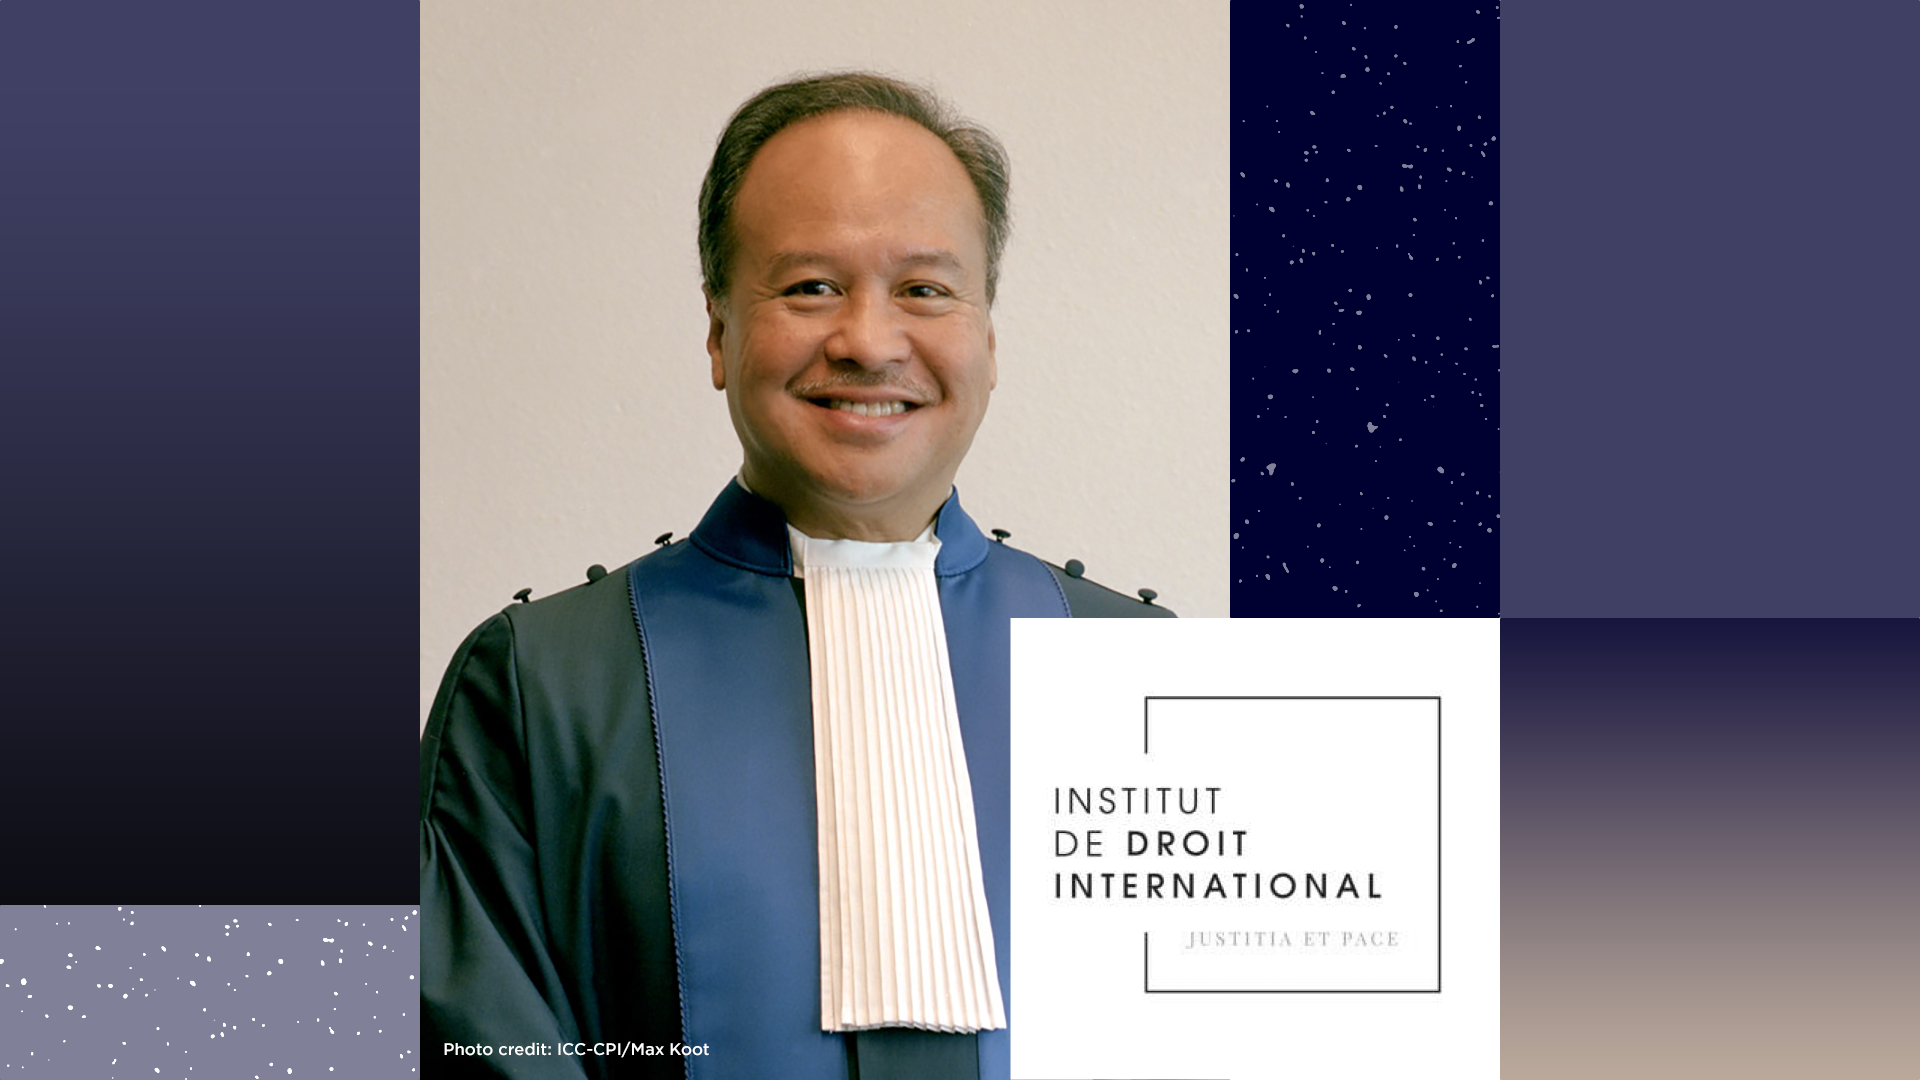 Judge Pangalangan is elected member of Institut de Droit International